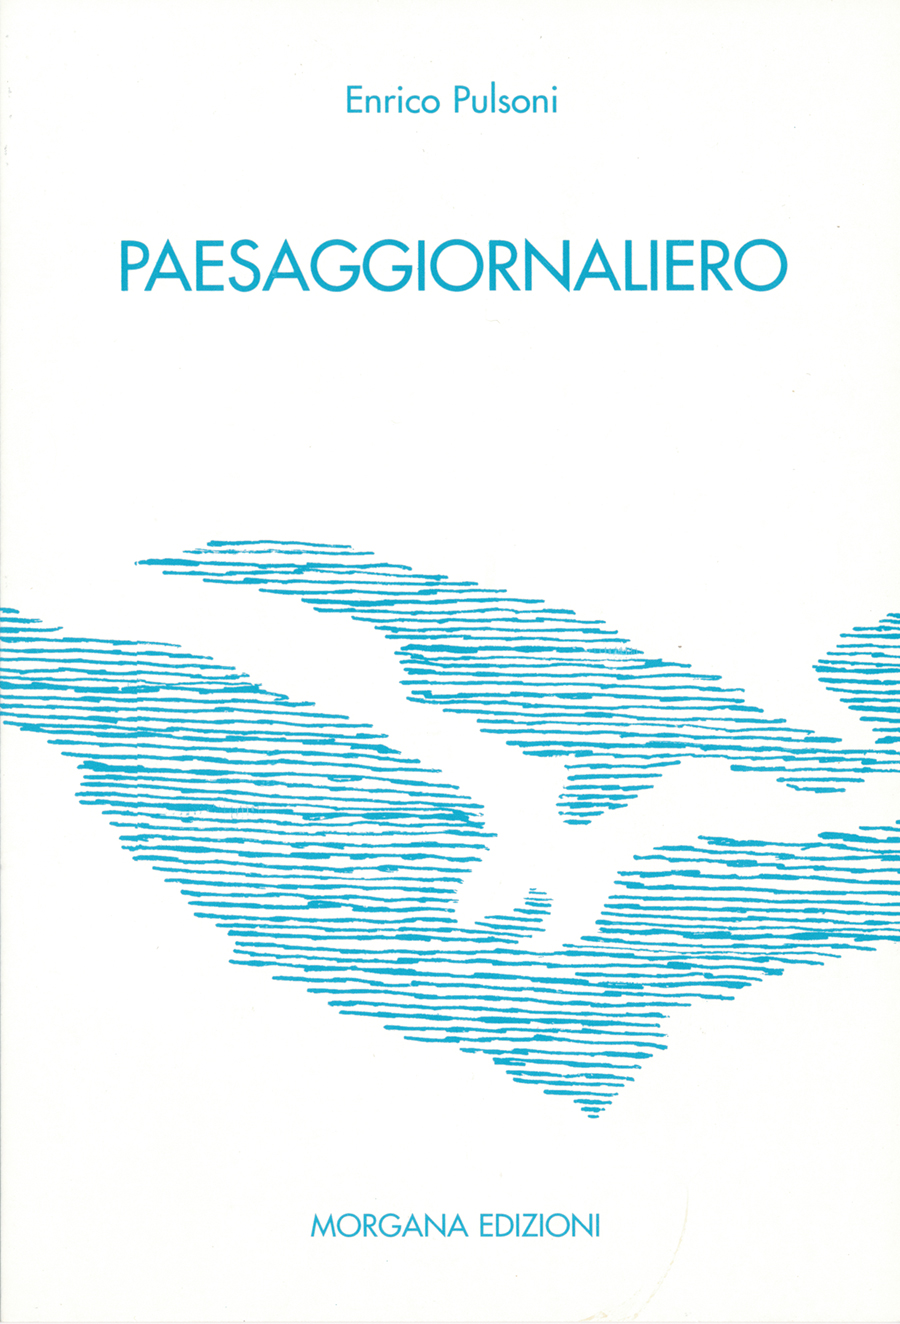 2001 Prato Paesaggiornaliero